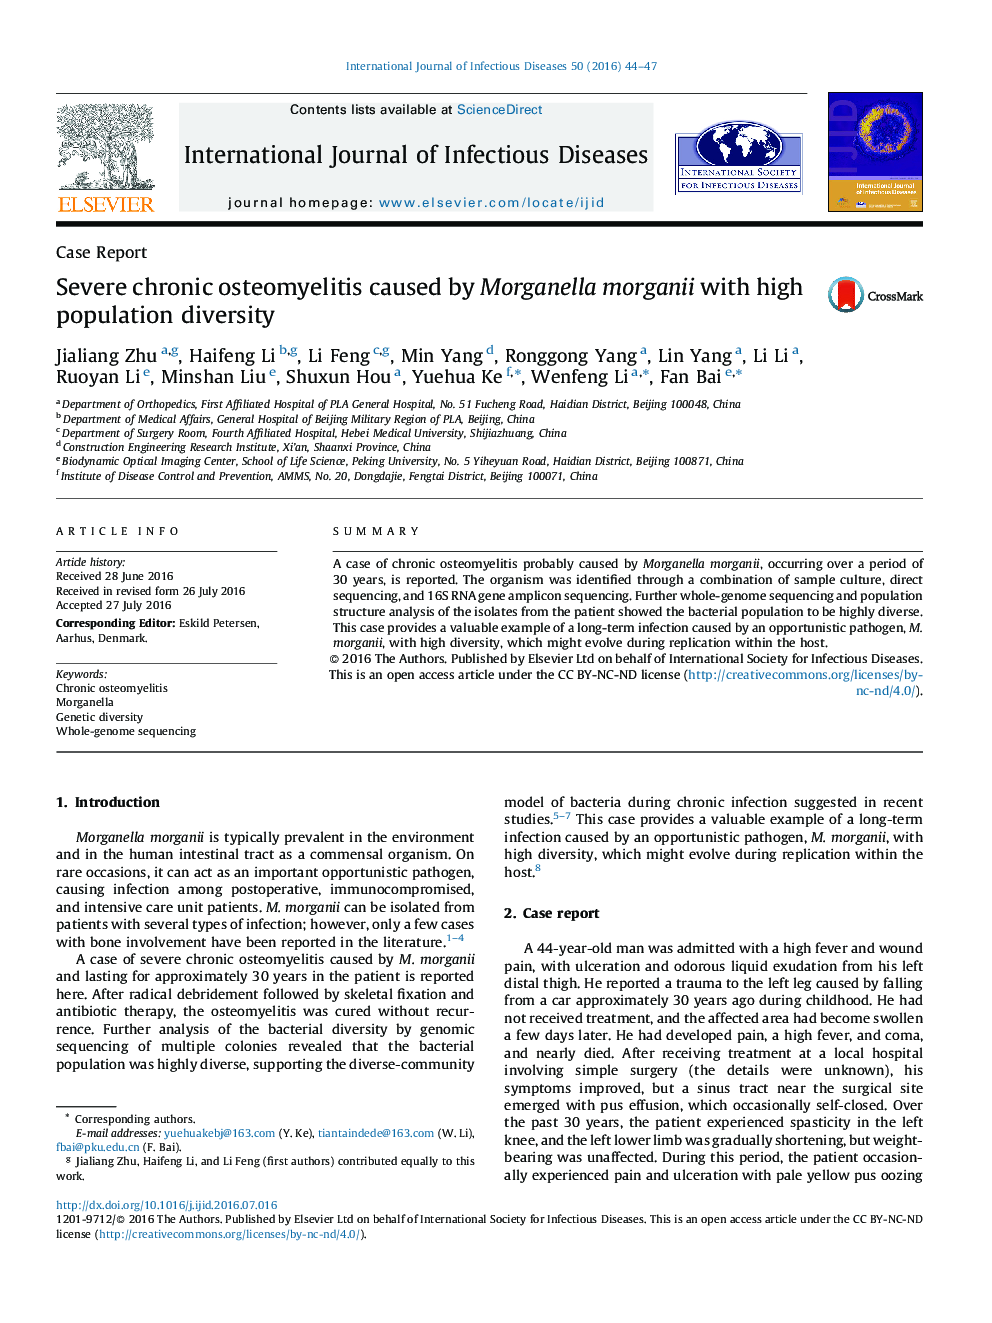 استئومیلیت مزمن شدید ناشی از Morganella morganii با تنوع جمعیت بالا  